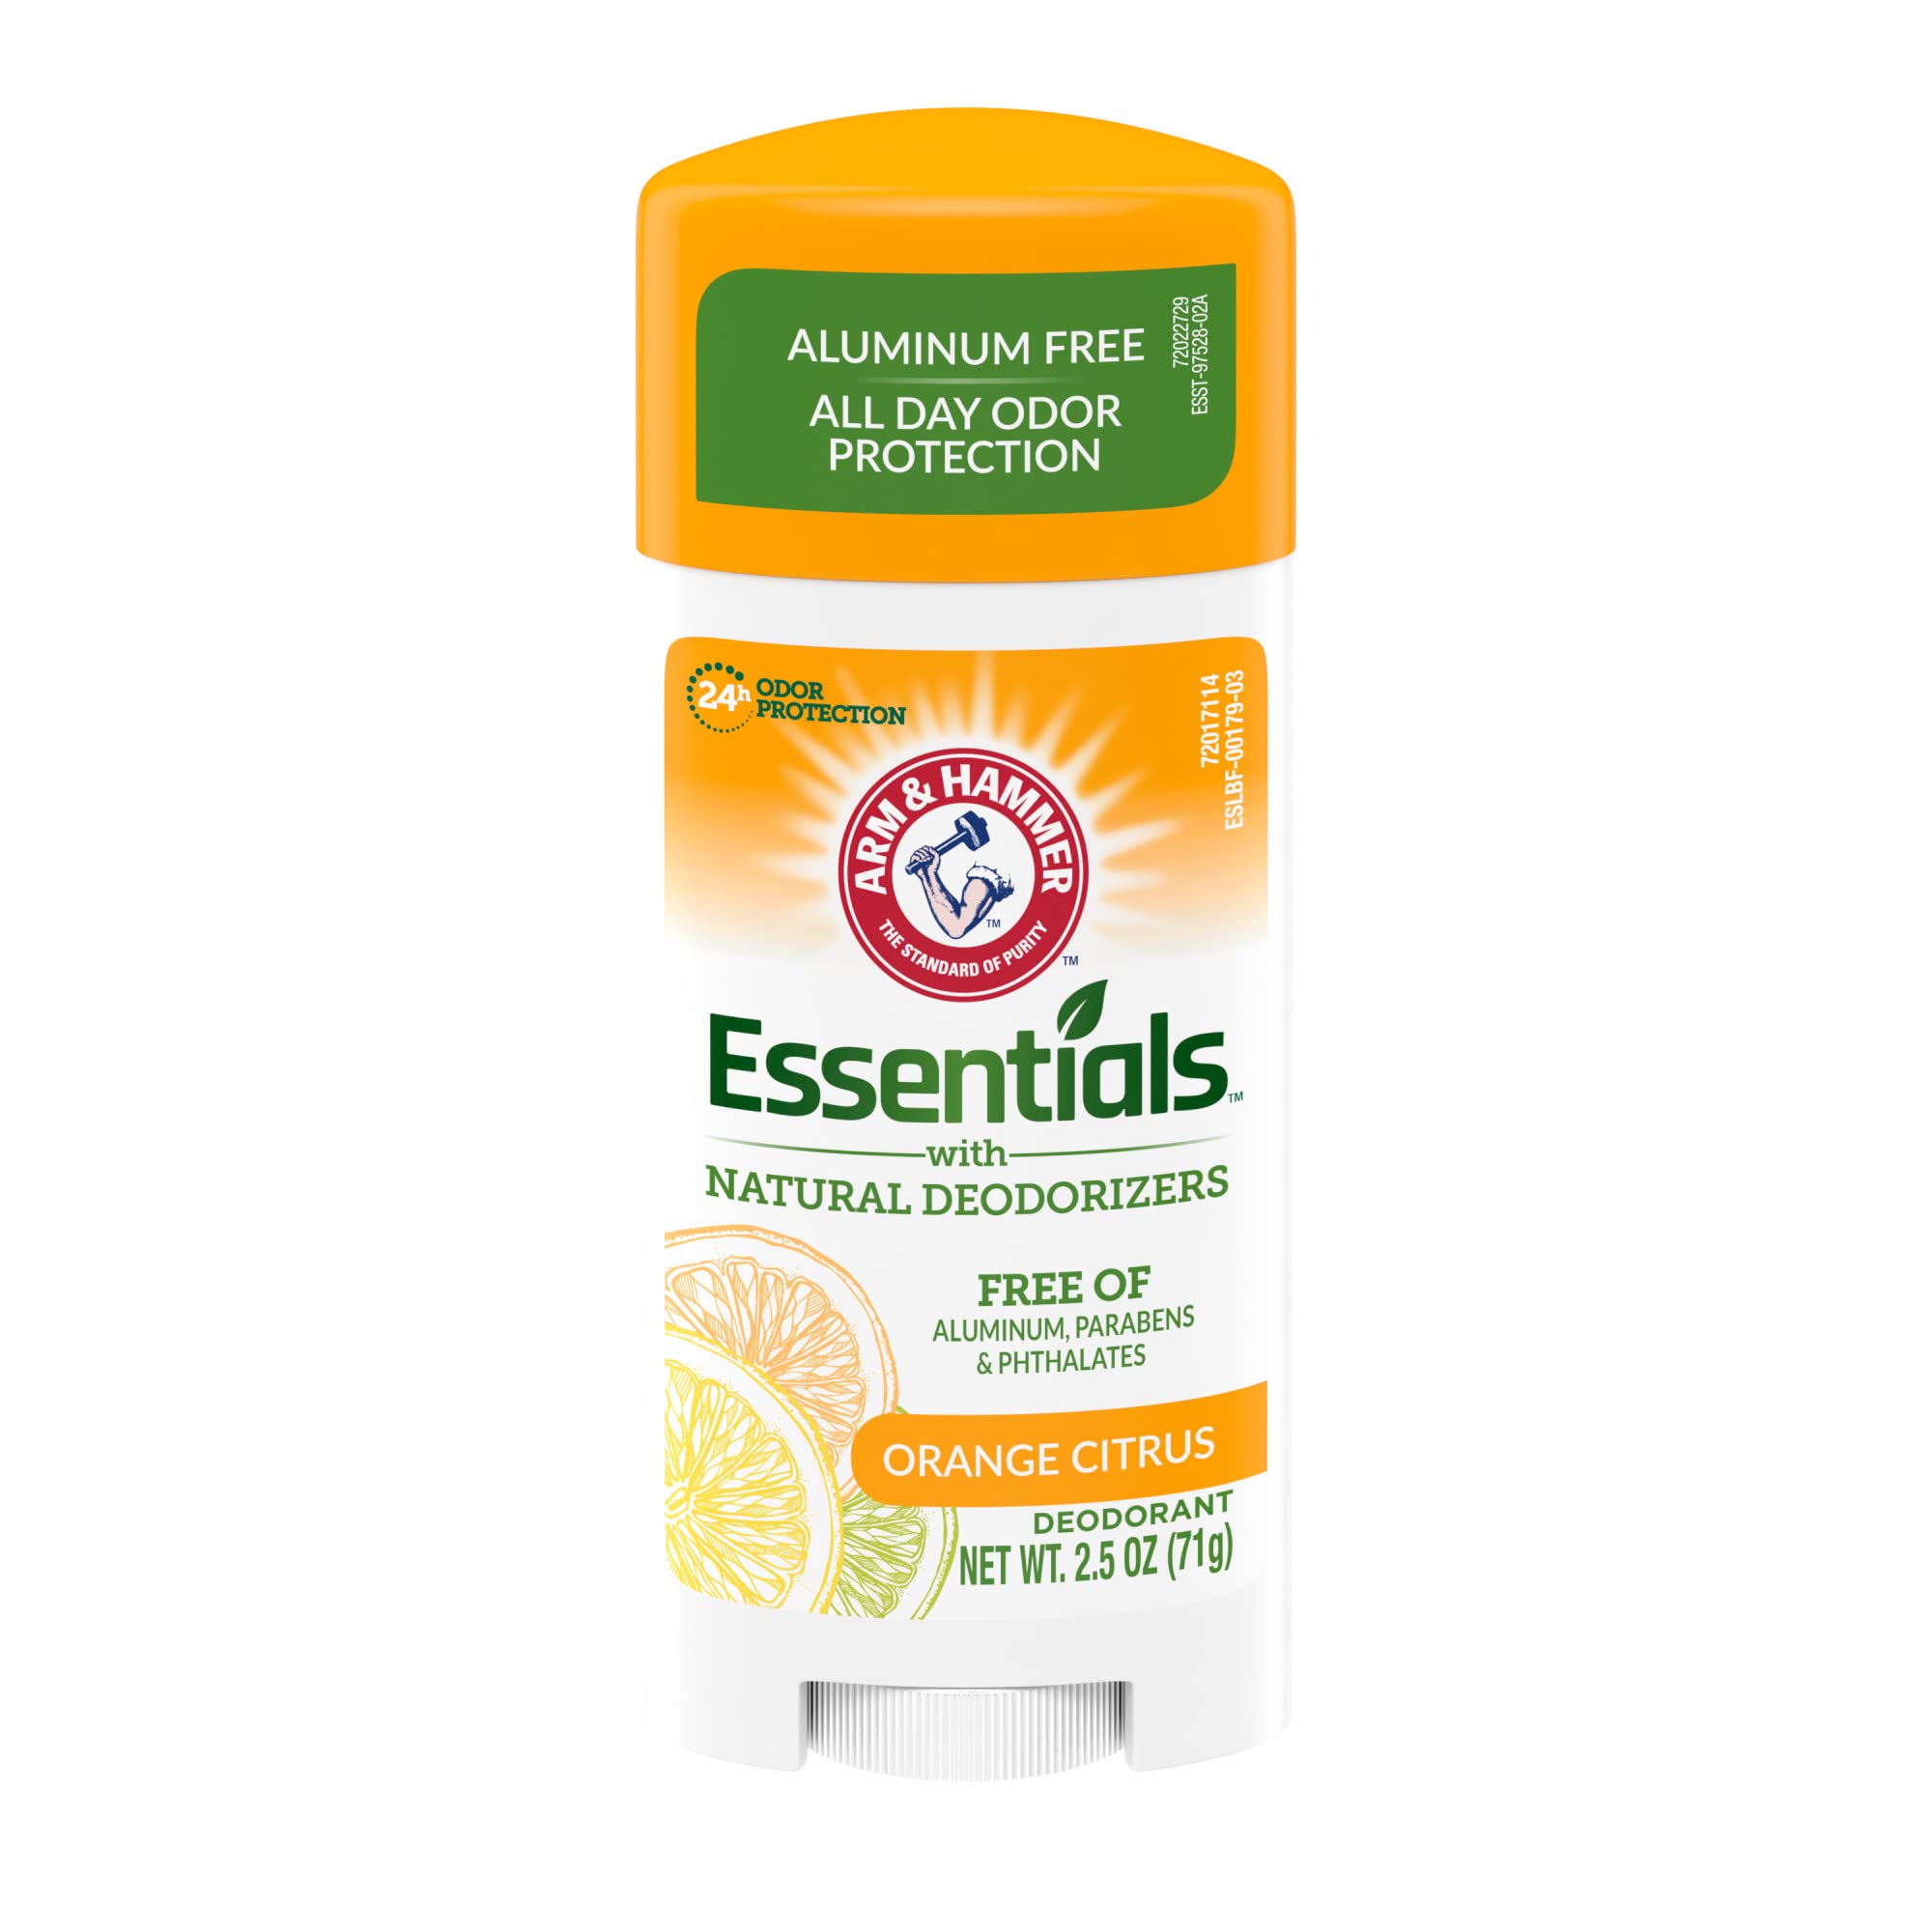 Arm & Hammer Essentials deodorant, crisp orange citrus, 2.5 ounce, 6 Count